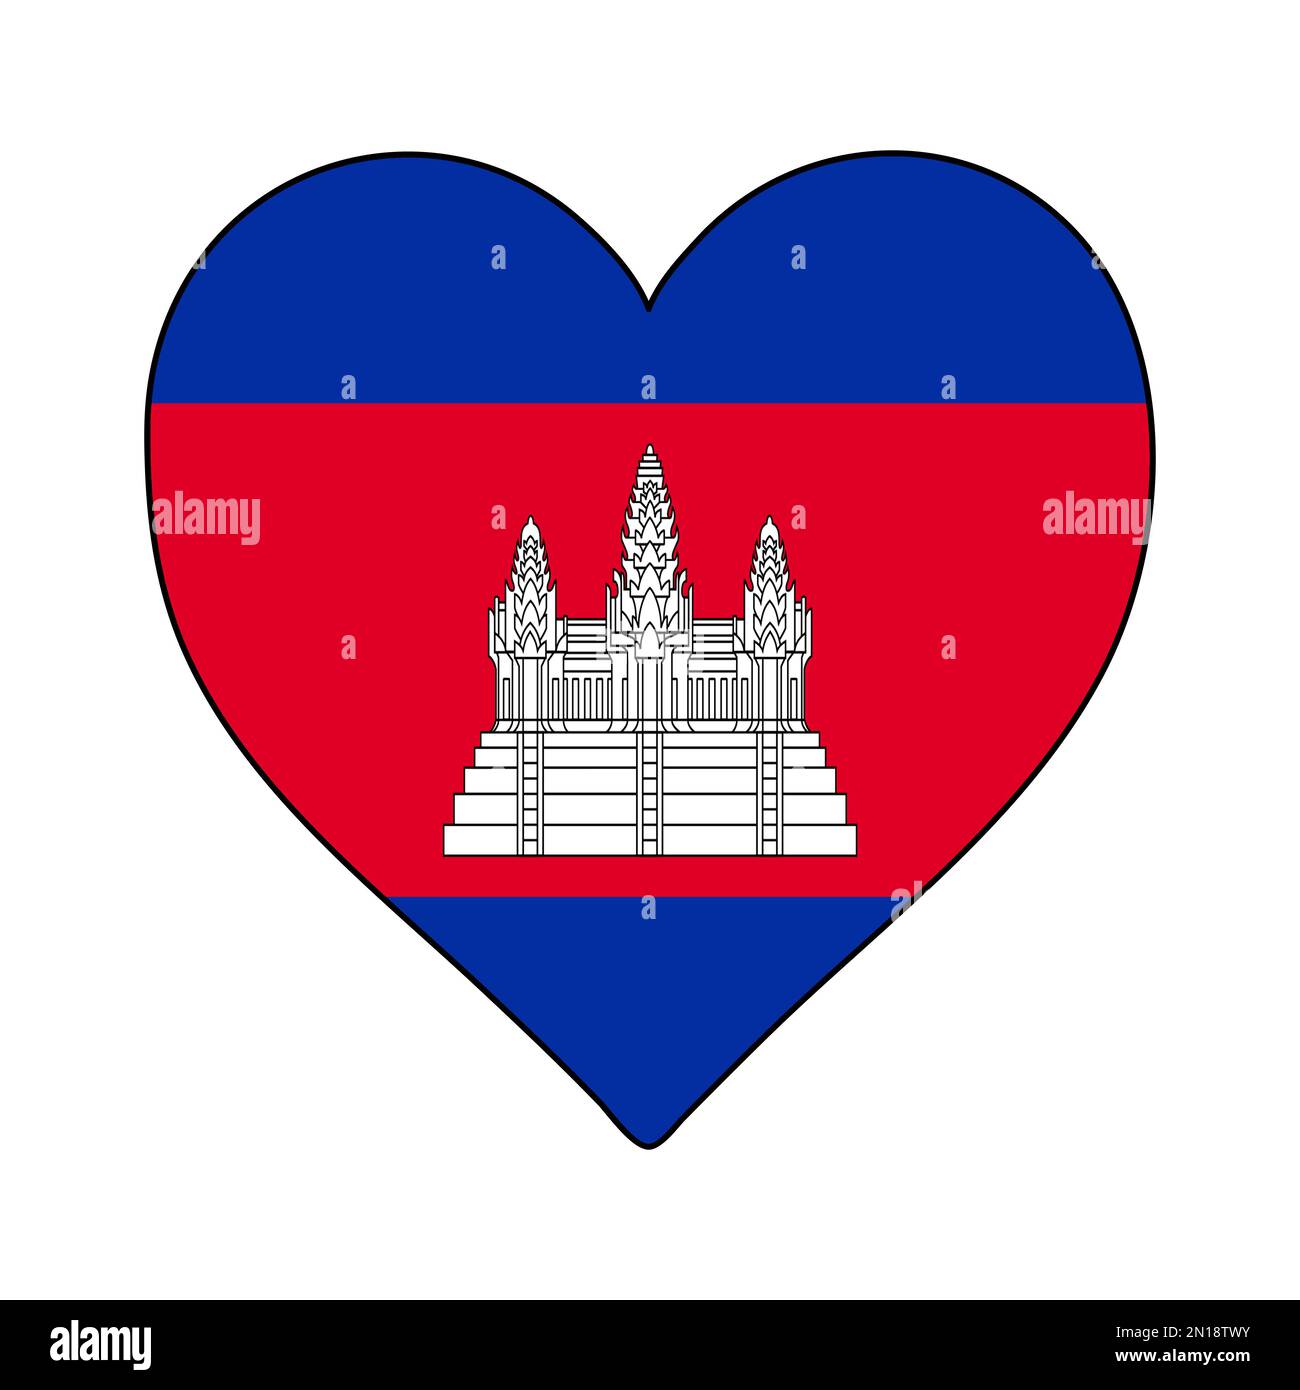 Kambodschanische Herzform-Flagge. Ich Liebe Kambodscha. Besuchen Sie Kambodscha. ASEAN. Asien. Grafische Konstruktion Von Vektordarstellungen. Stock Vektor